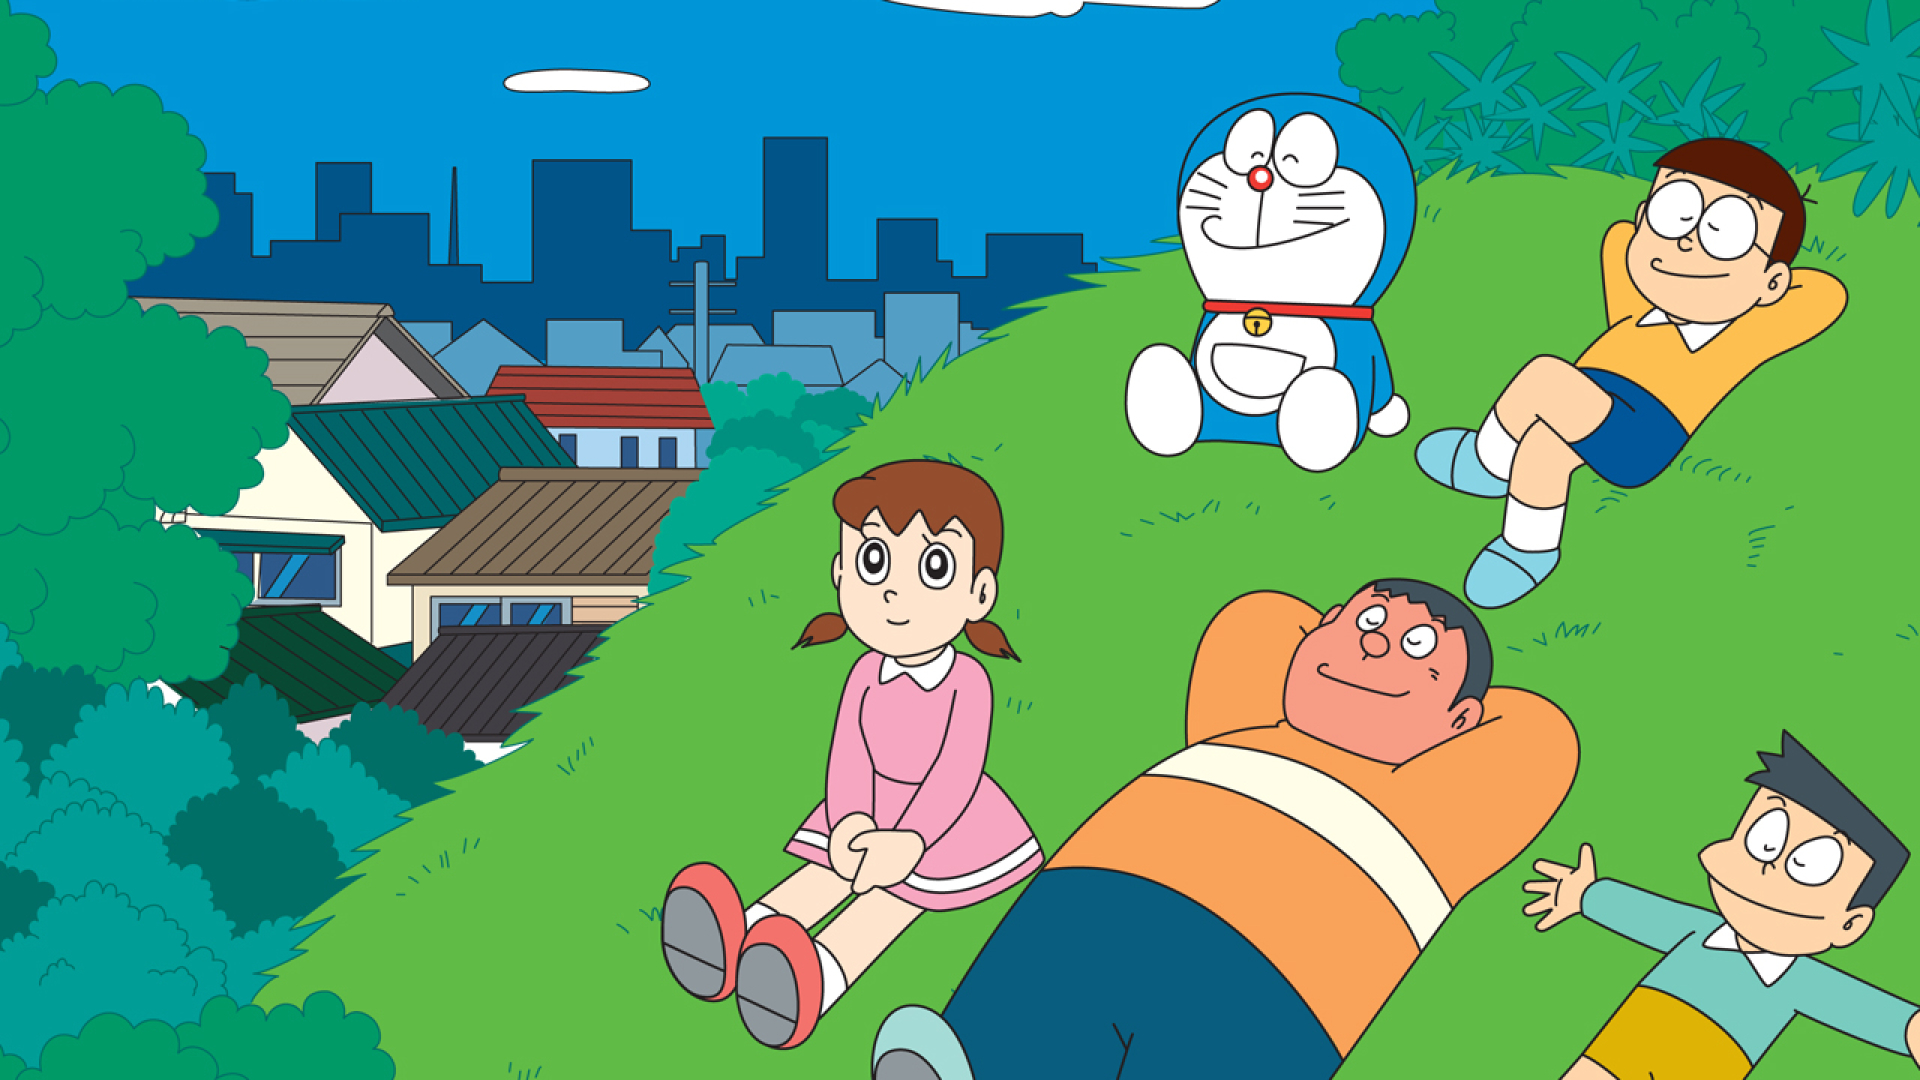 Doraemon Nobita Sunio Shizuka Minamoto Nobita Nobi Takeshi Gouda Gian Suneo Honekawa Dorami Anime An 1920x1080